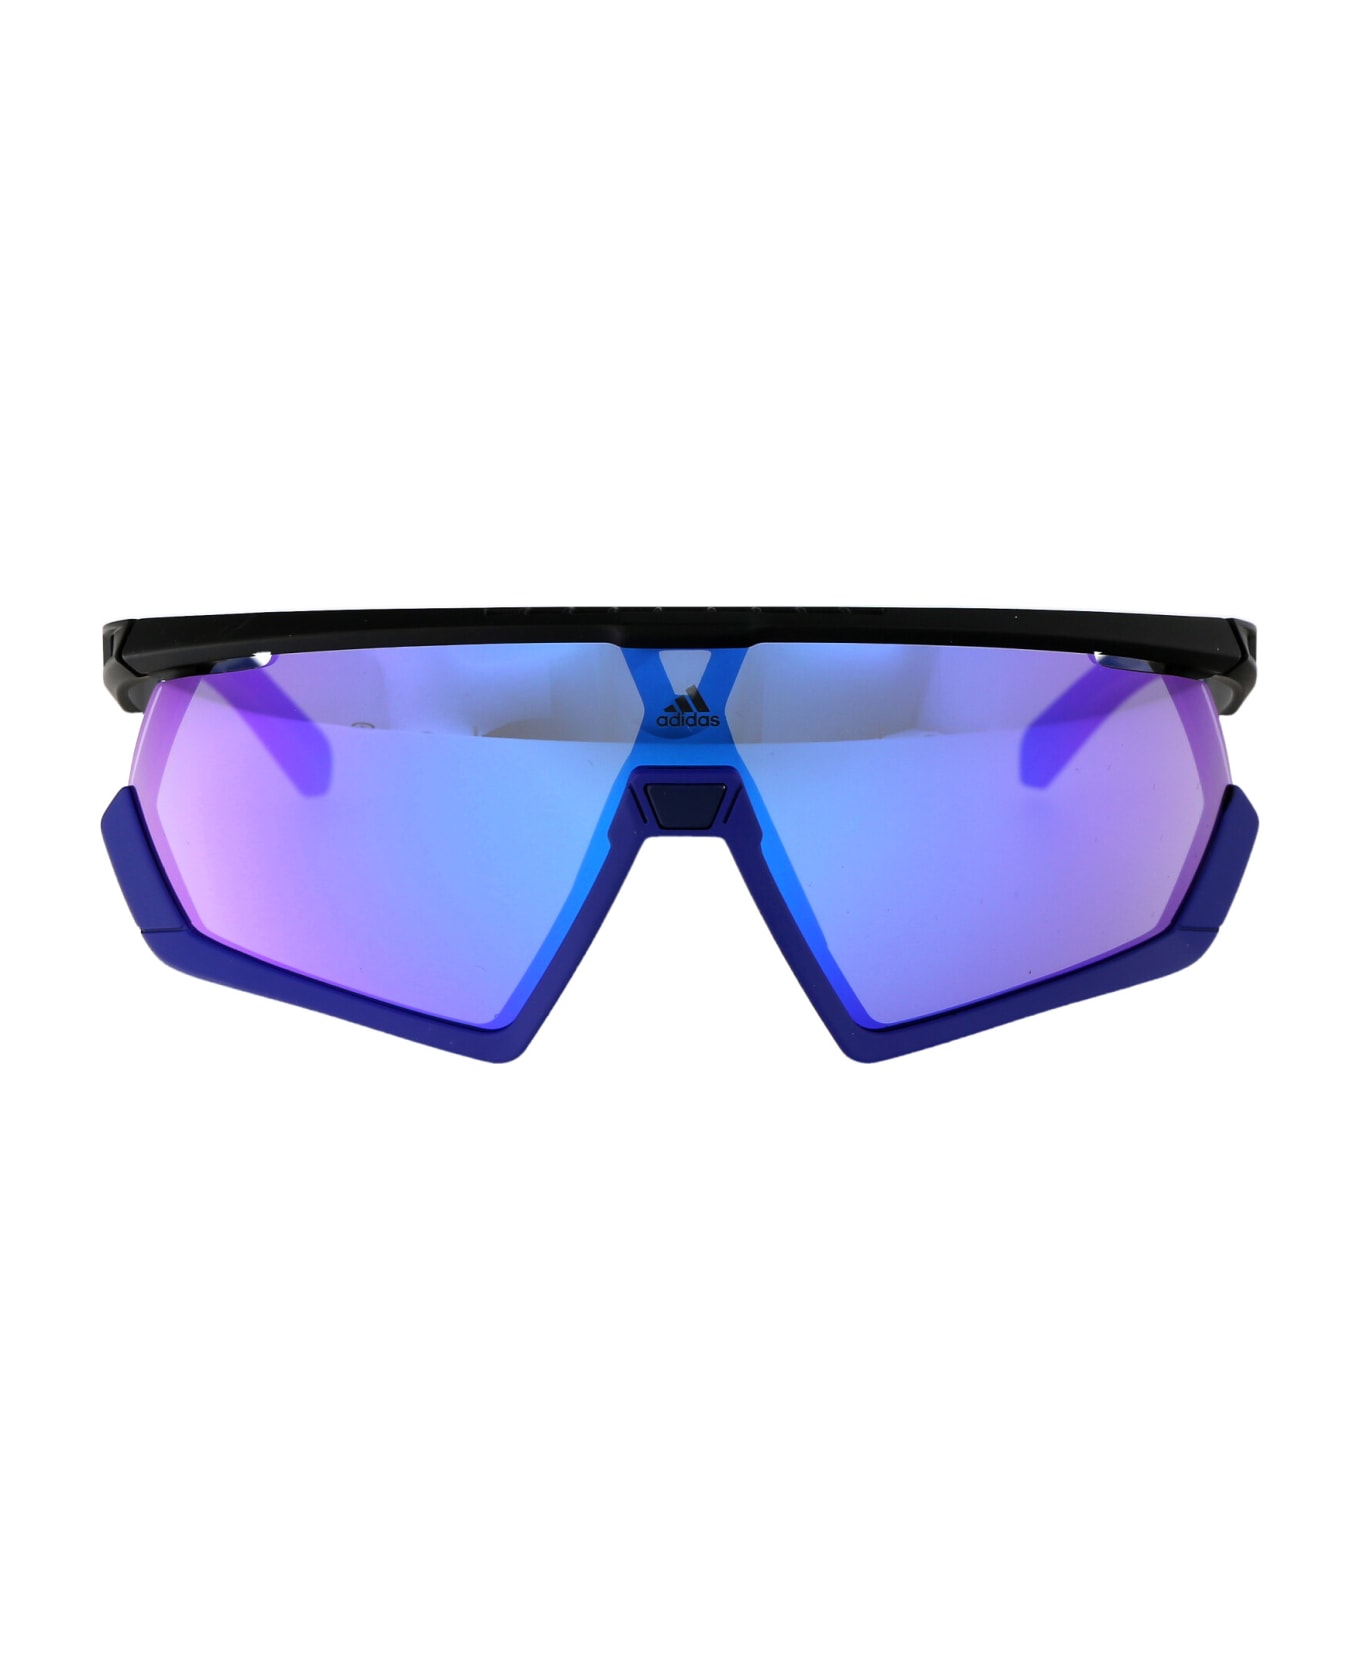 Adidas Sp0054 Sunglasses - 02Z Nero Opaco/Viola Grad E/O Specchiato